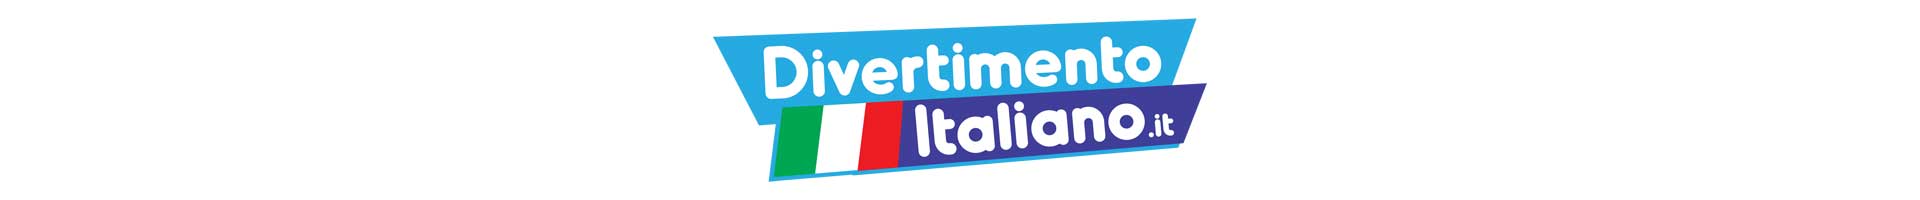 divertimento italiano 1